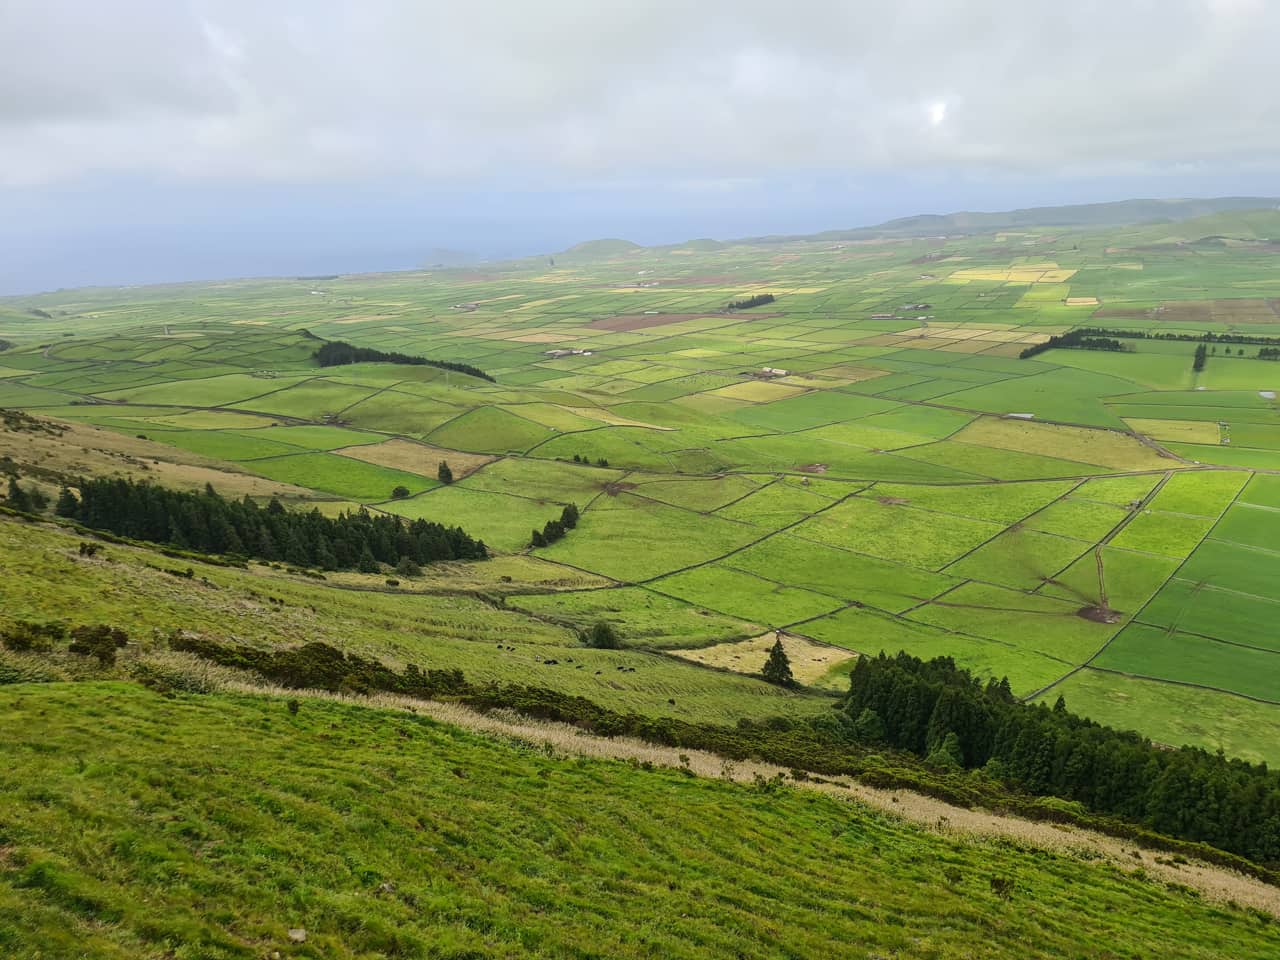 Motiv von der Azoreninsel Terceira